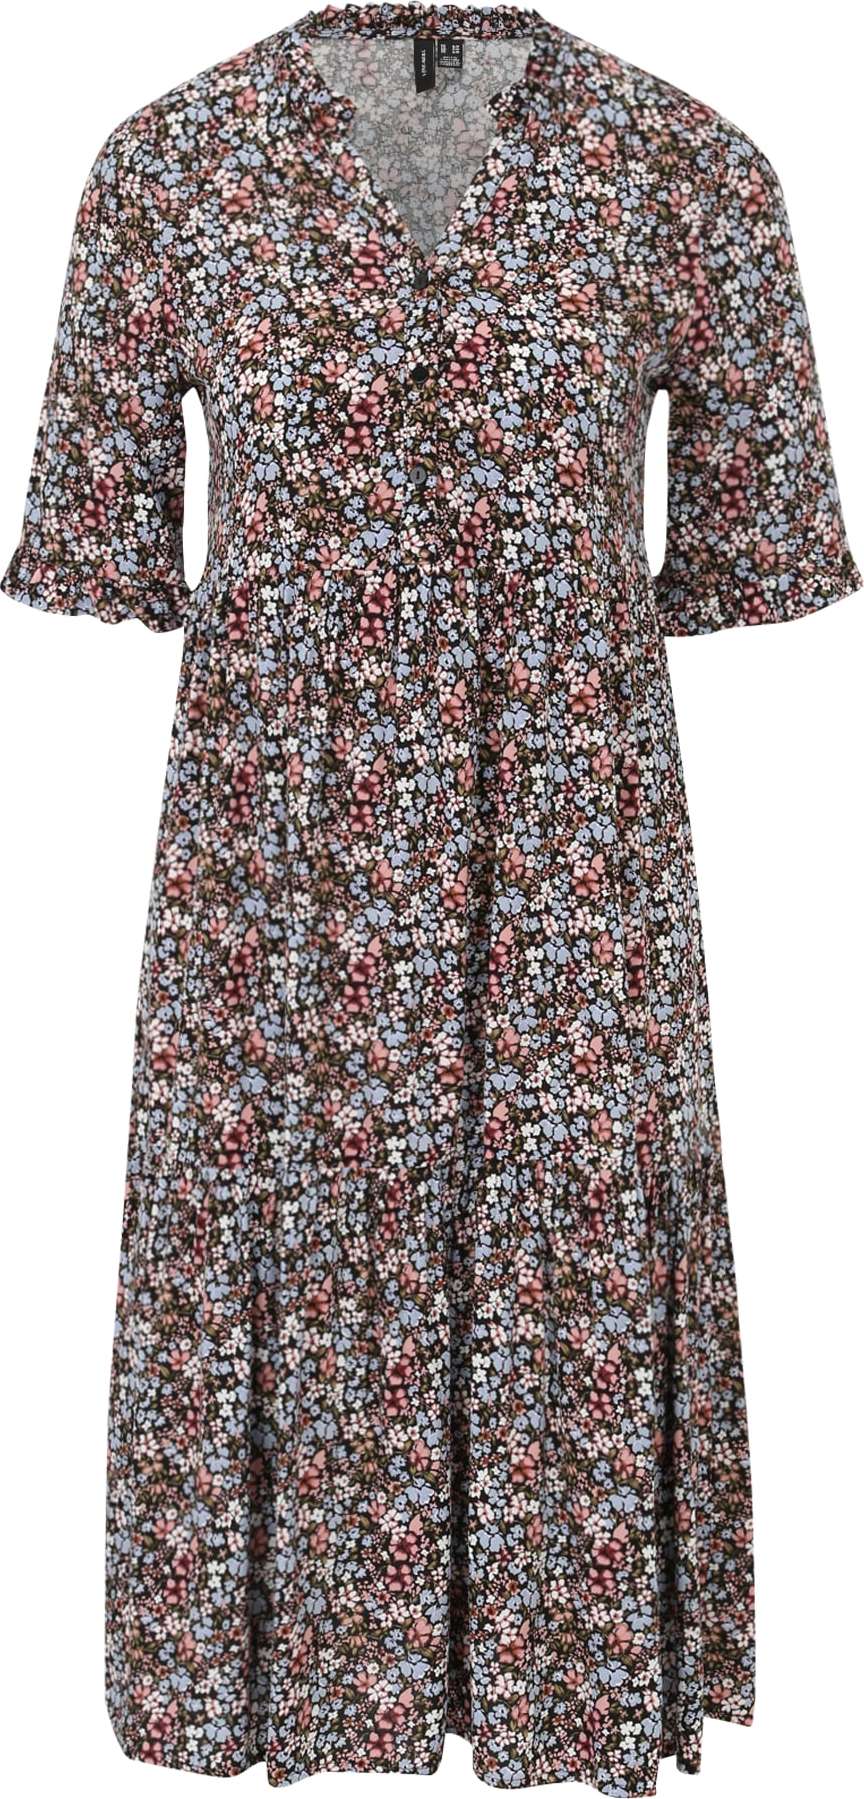 Vero Moda Petite Košilové šaty 'EASY' olivová / šeříková / světle červená / černá / bílá